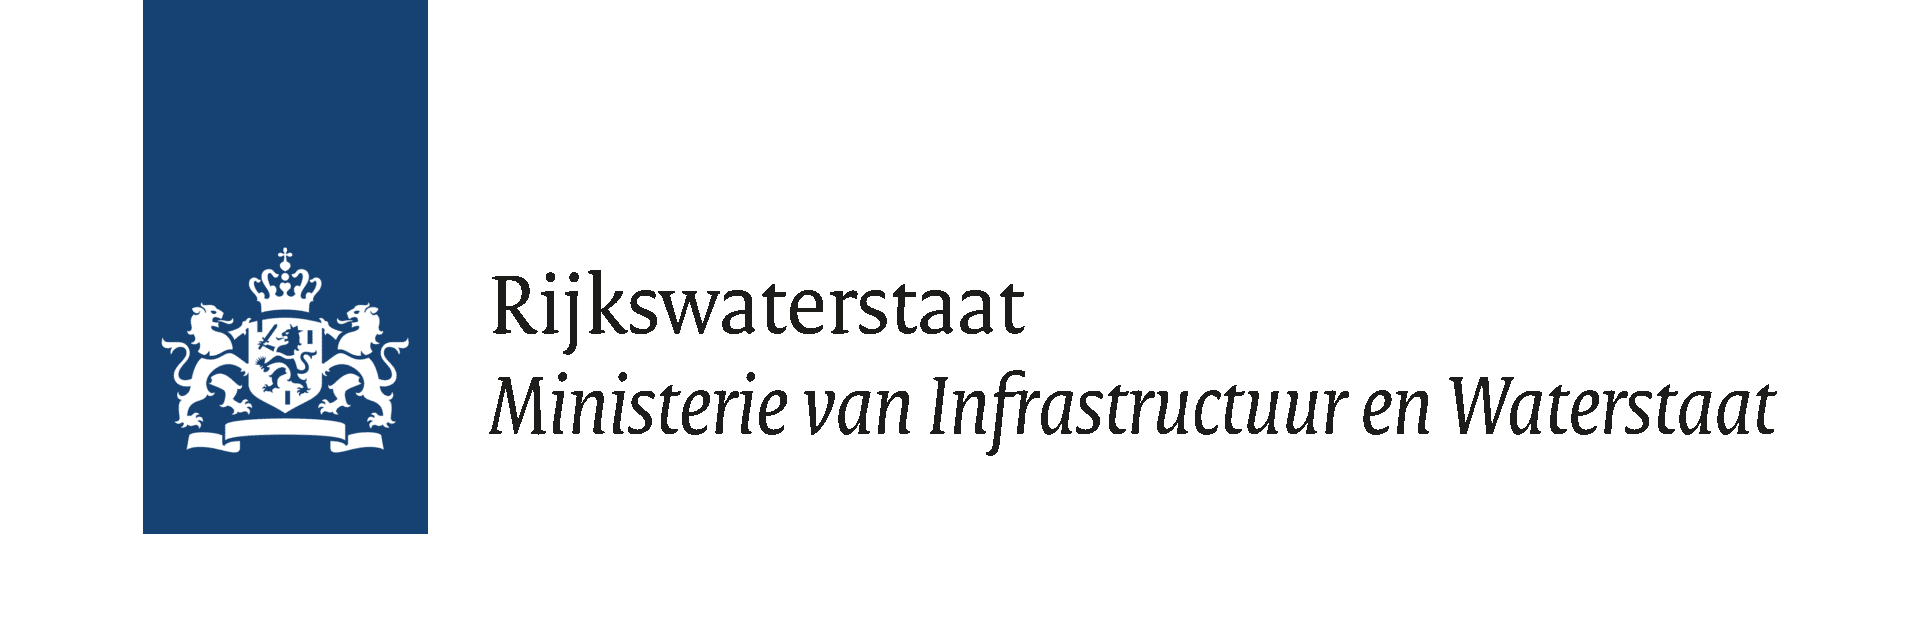 rijkswaterstaat logo 2022